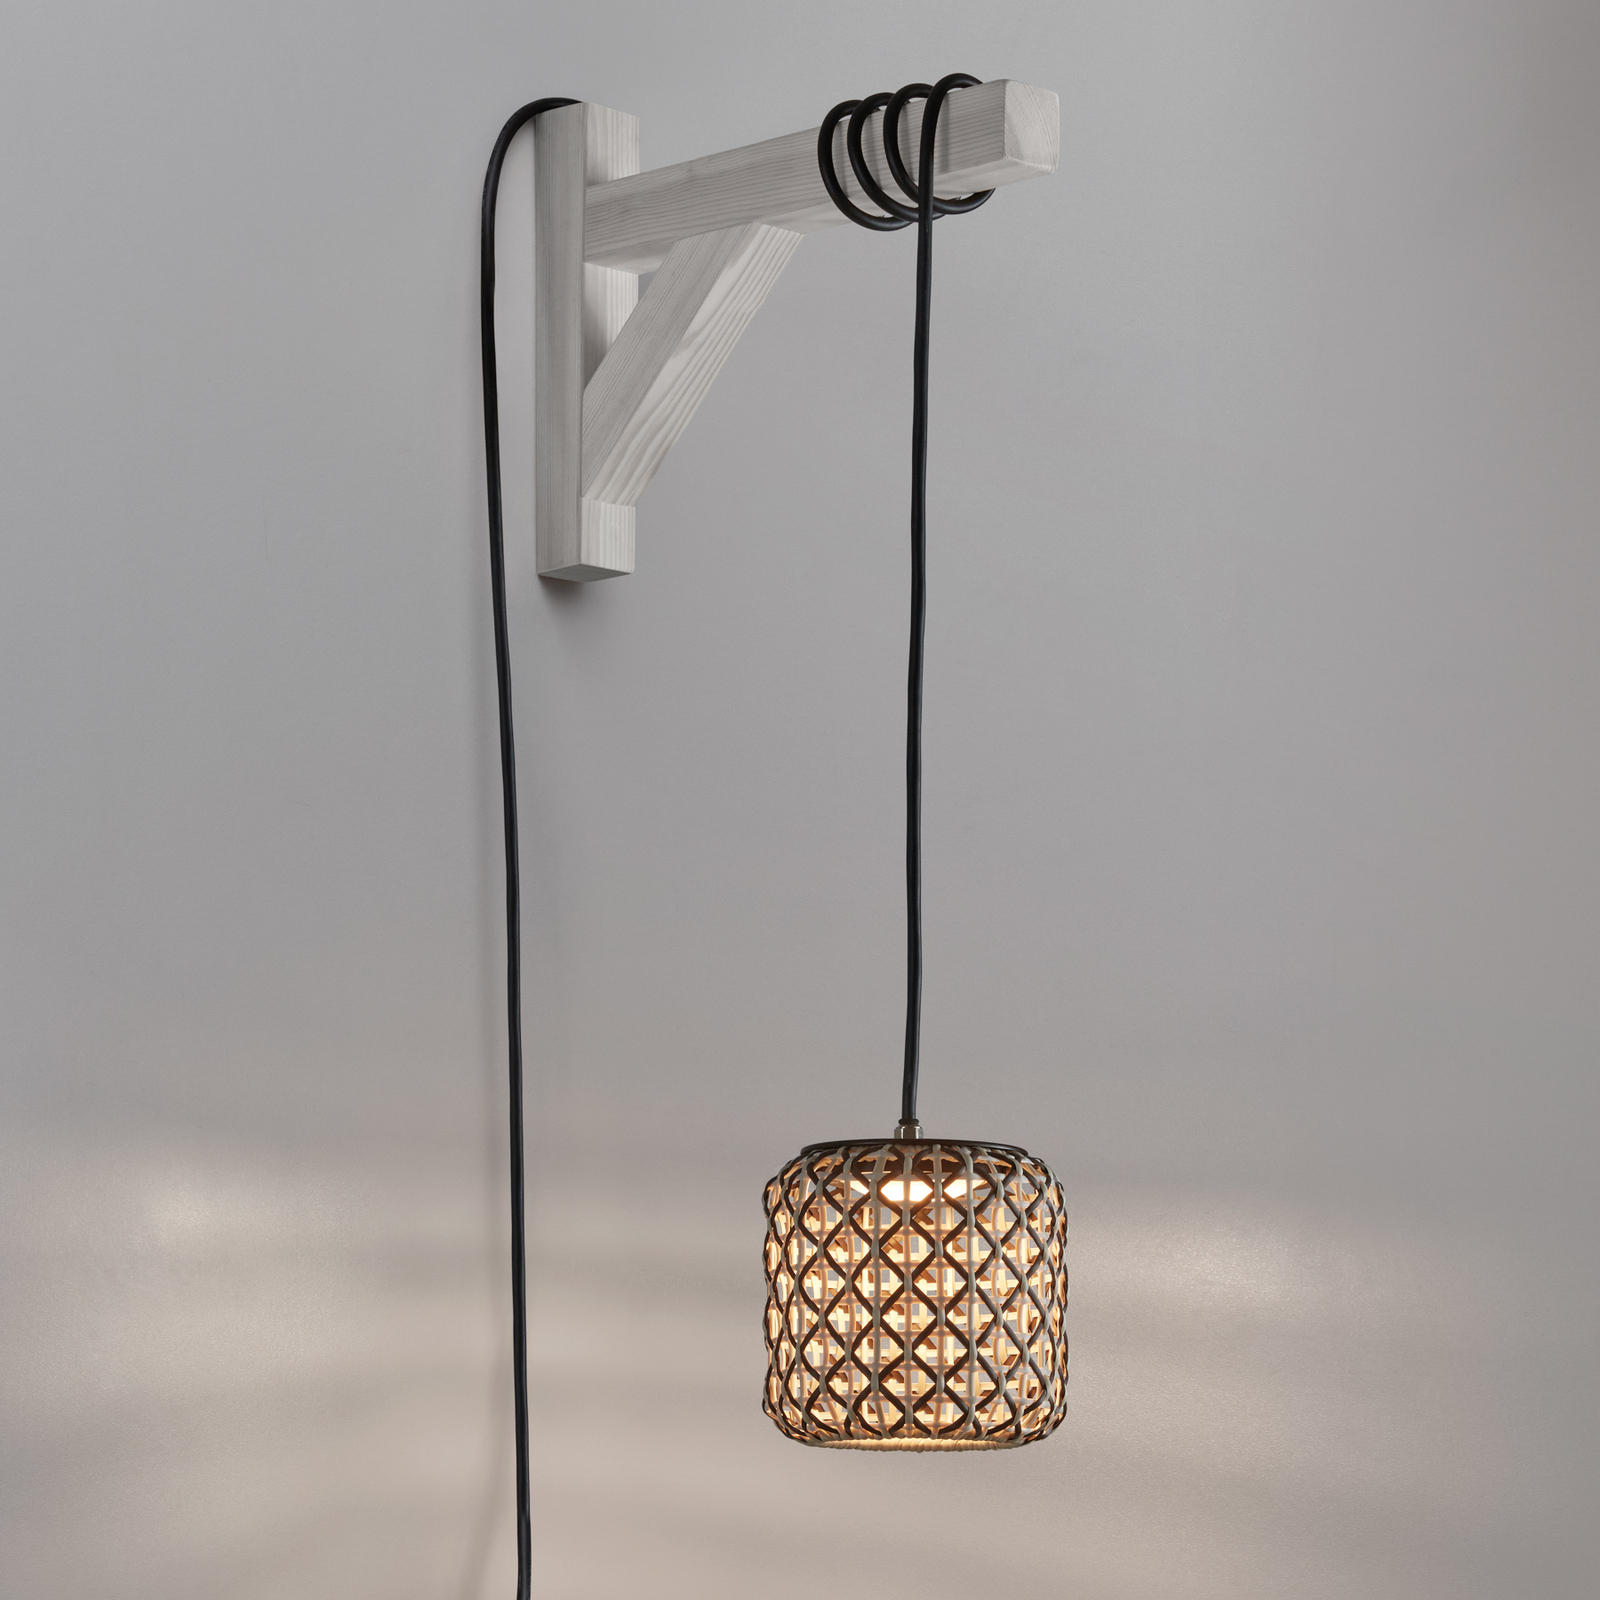 Bover Nans S/16/H LED hanglamp, stekker, bruin